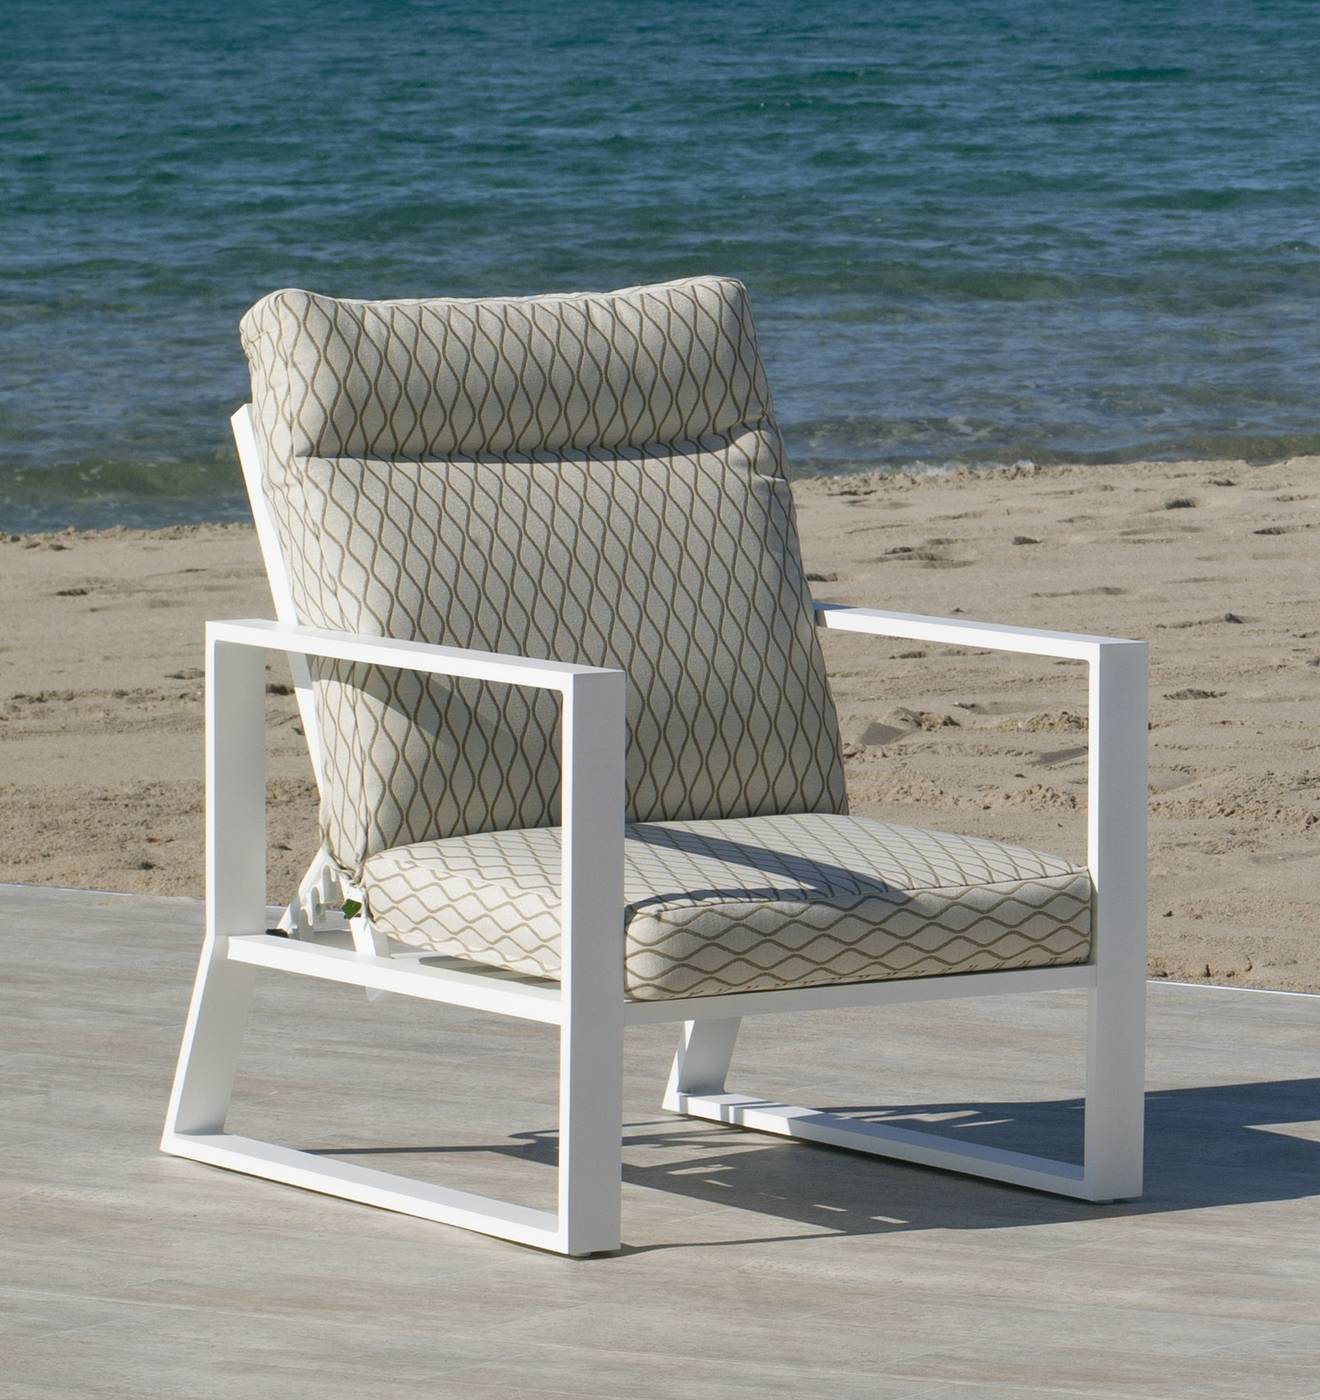 Sillón Aluminio Bolonia-19 - Sillón relax lujo, con respaldo reclinable. Fabricado de aluminio en color blanco, antracita, champagne, plata o marrón.